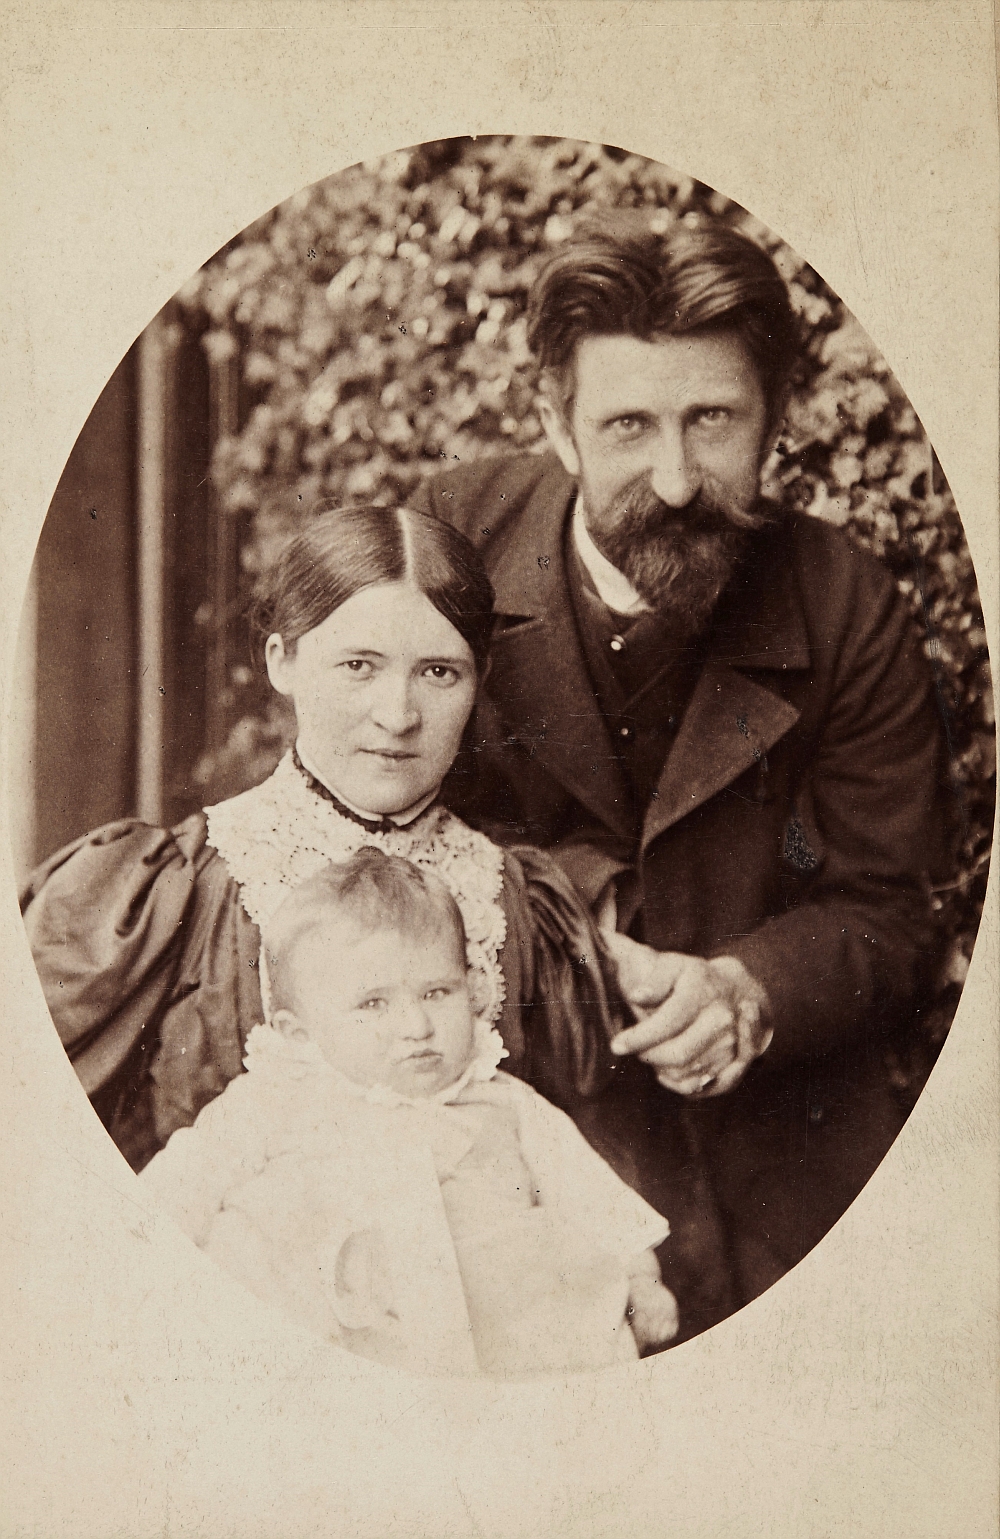 Familie Reiffenstein: Vater Leo, Mutter Maria, geb. Zachariae, Sohn Manfred, 1895, Fotografie, Familienbesitz